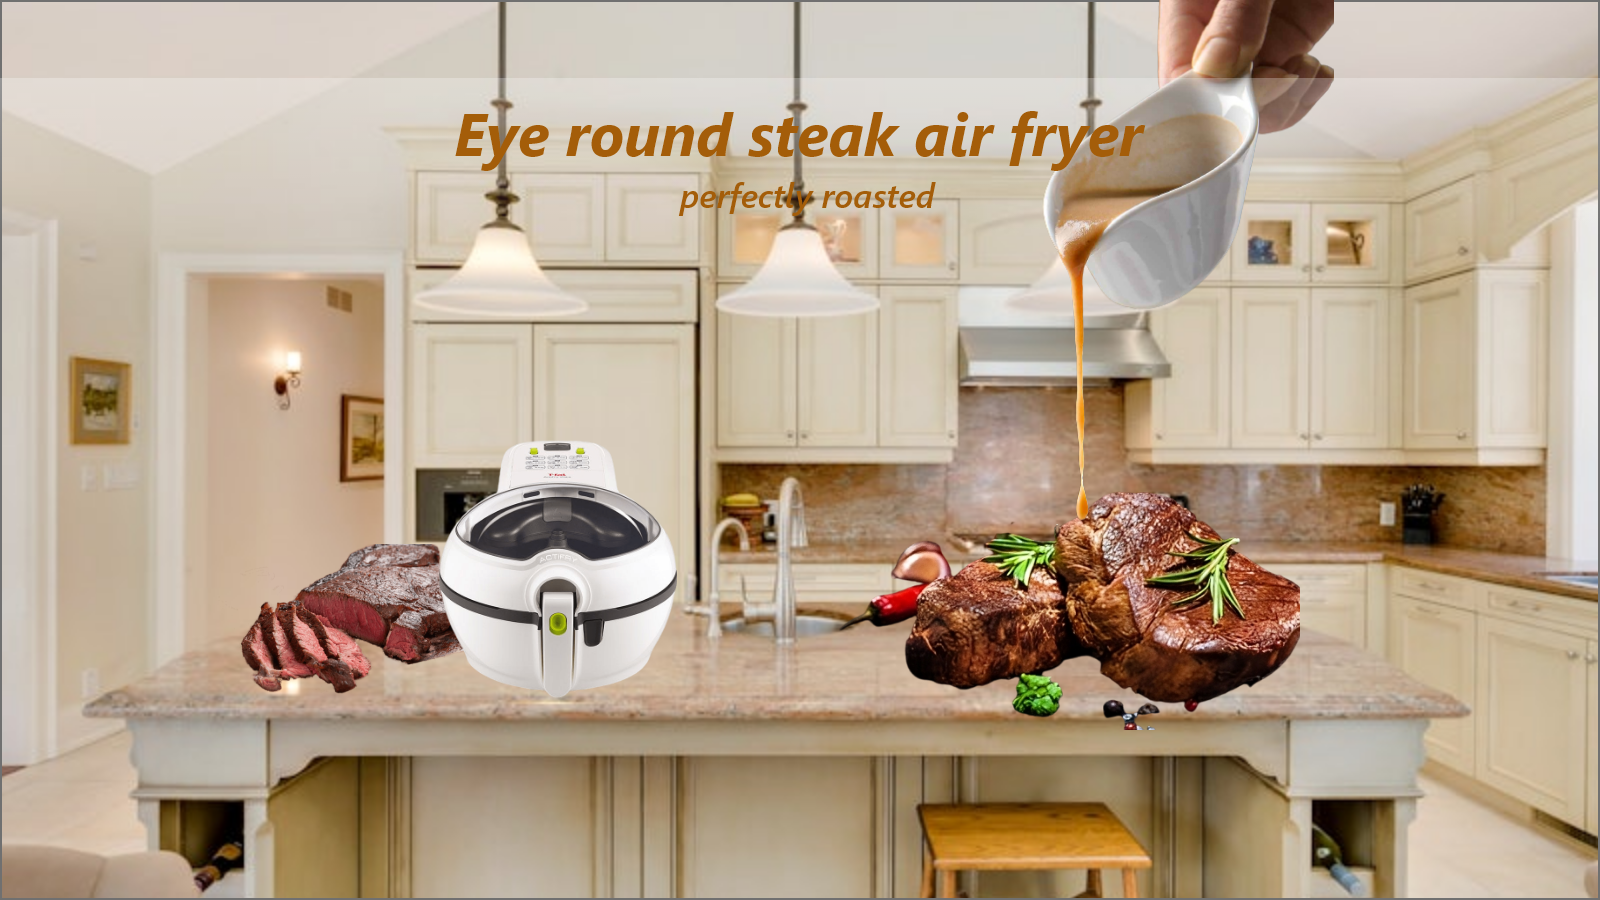 Eye round steak air fryer